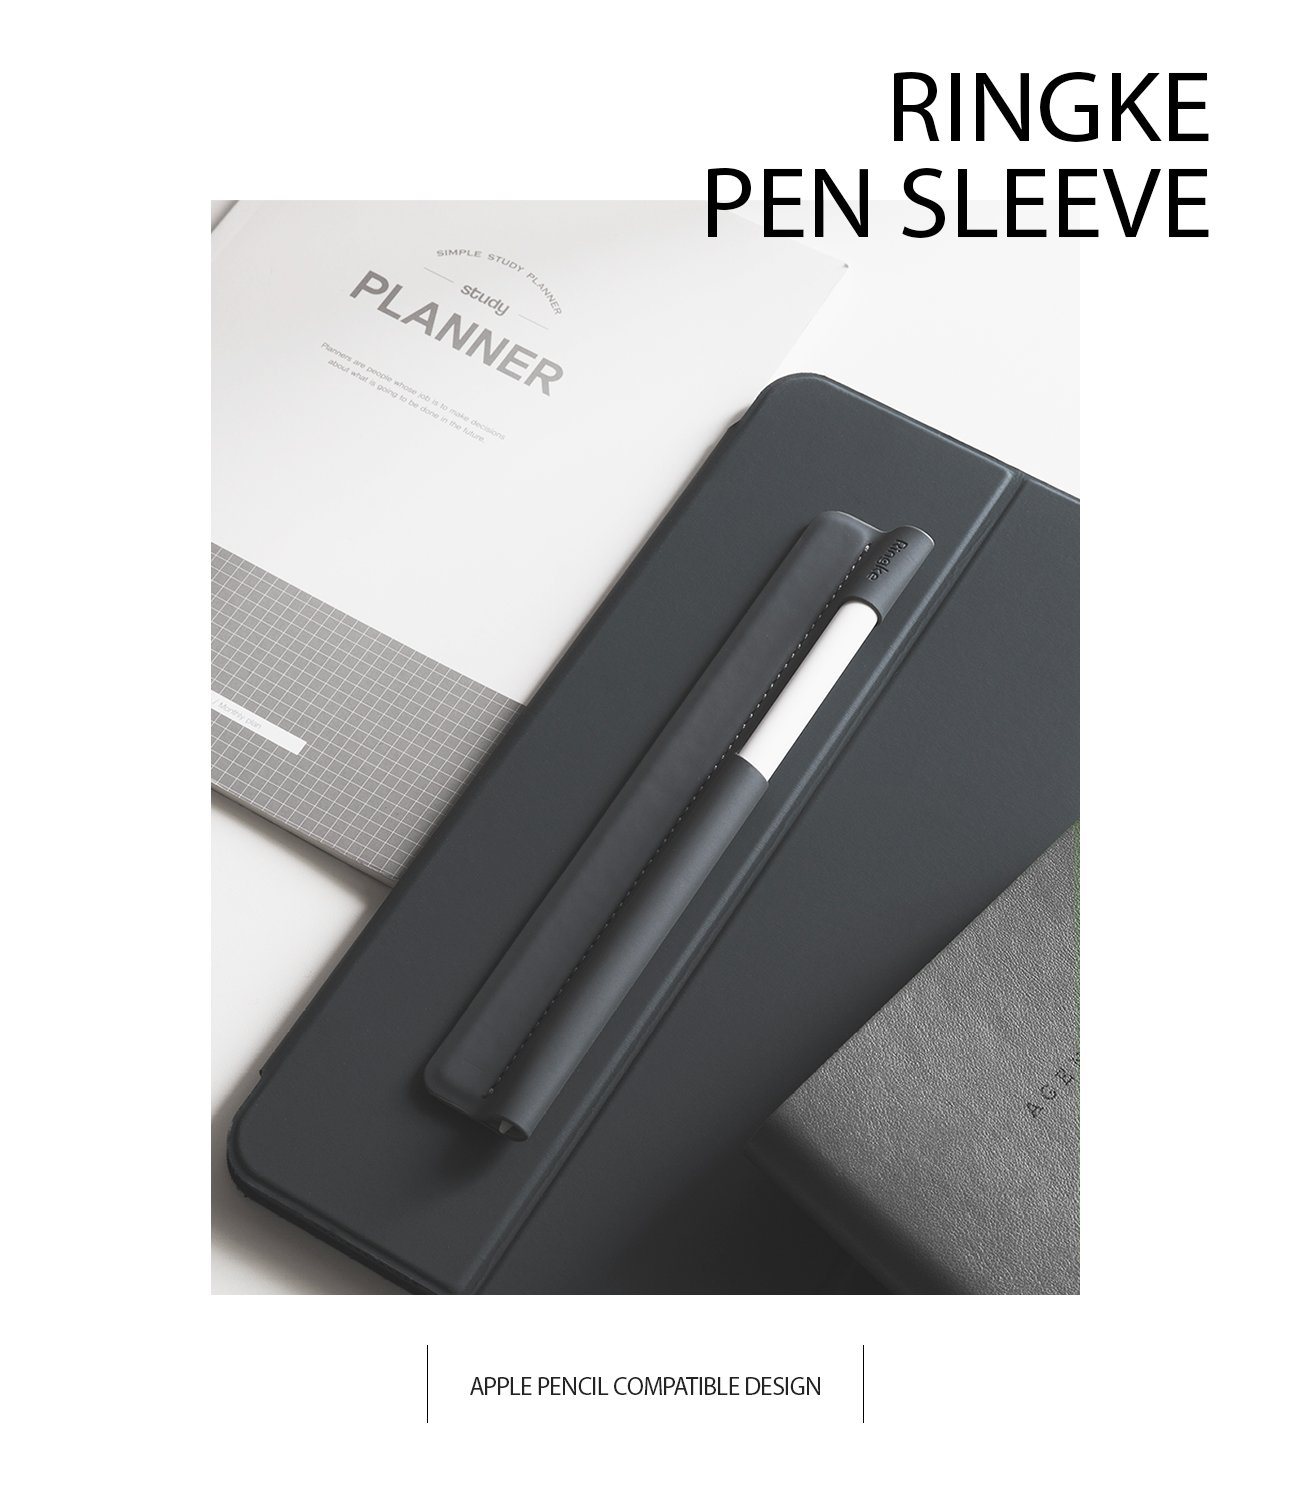 Ringke Pen Sleeve Holder, Gray Pen Holder Ringke 